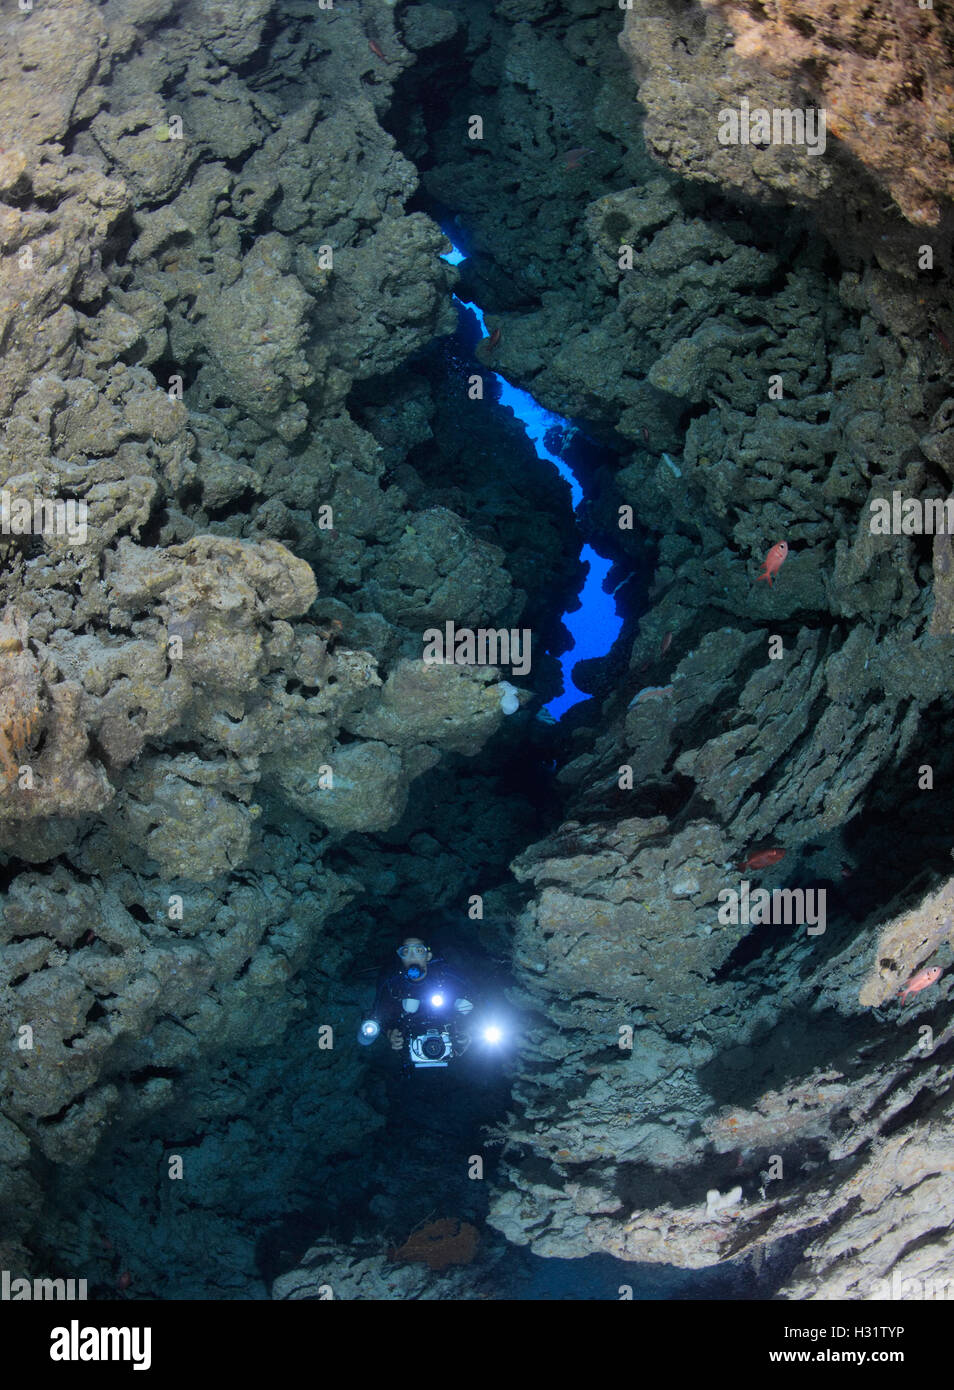 QZ1003-D. Scuba Diver (Modell freigegeben) mit Unterwasser-Kamera erkunden Passage durch das Riff an einem Tauchplatz namens "Admir Stockfoto